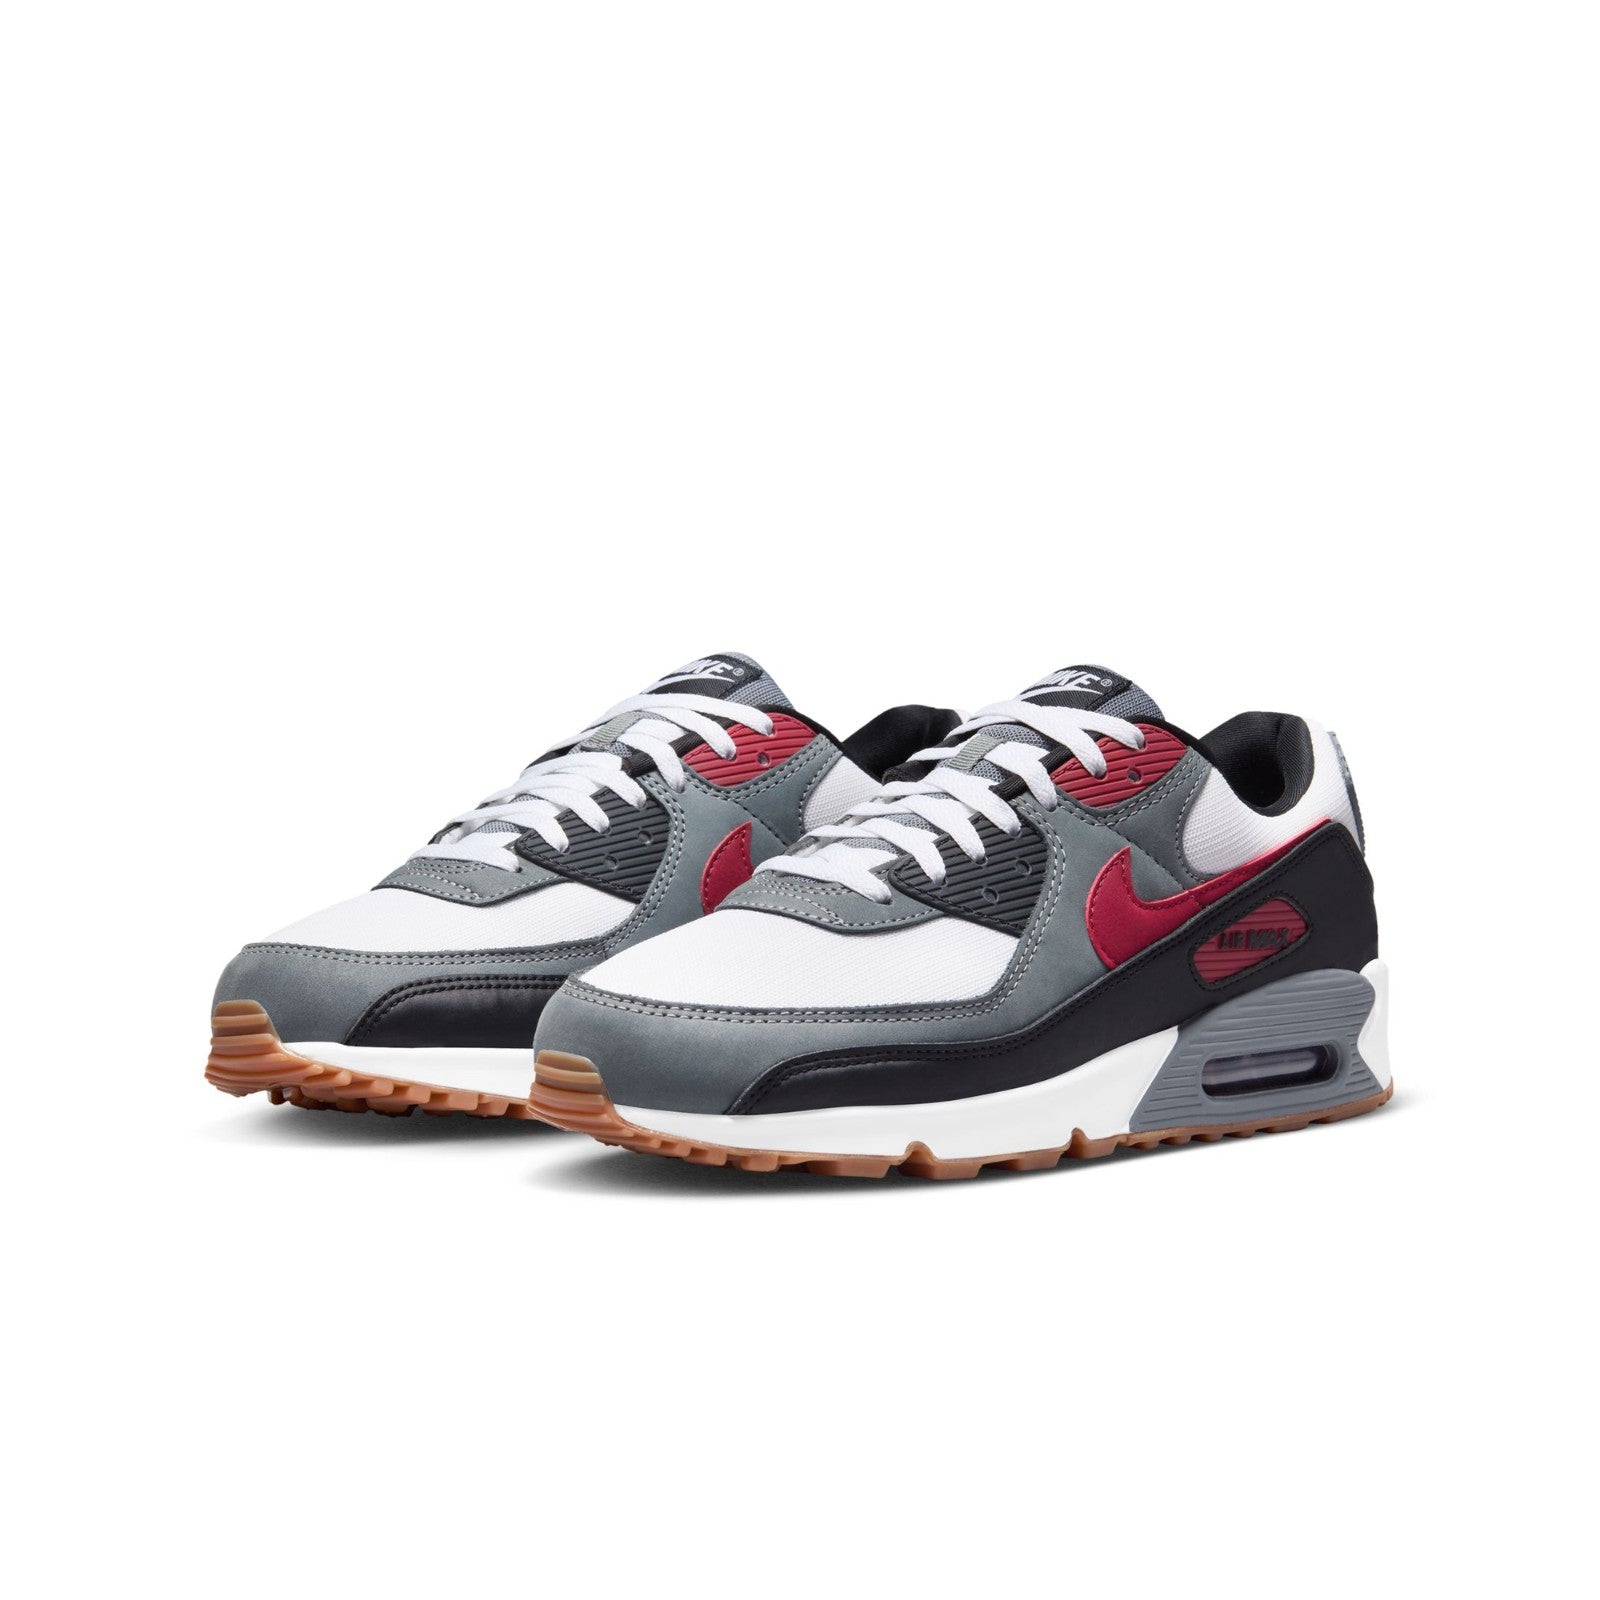 Men's Nike Air Max 90 Shoes